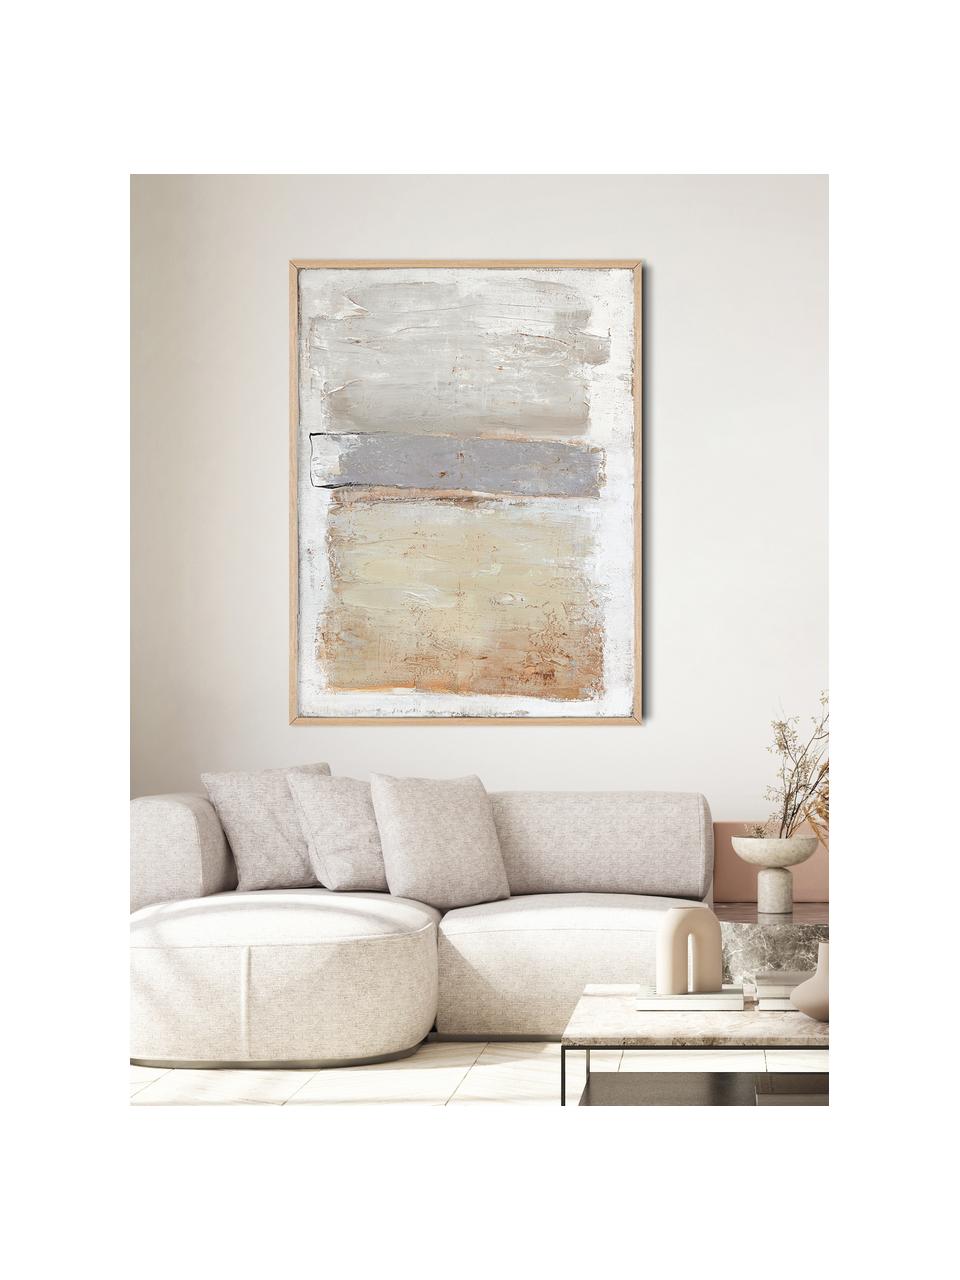 Ručně malovaný obrázek na plátně s dřevěným rámem Scenario, Béžová, šedá, Š 92 cm, V 120 cm